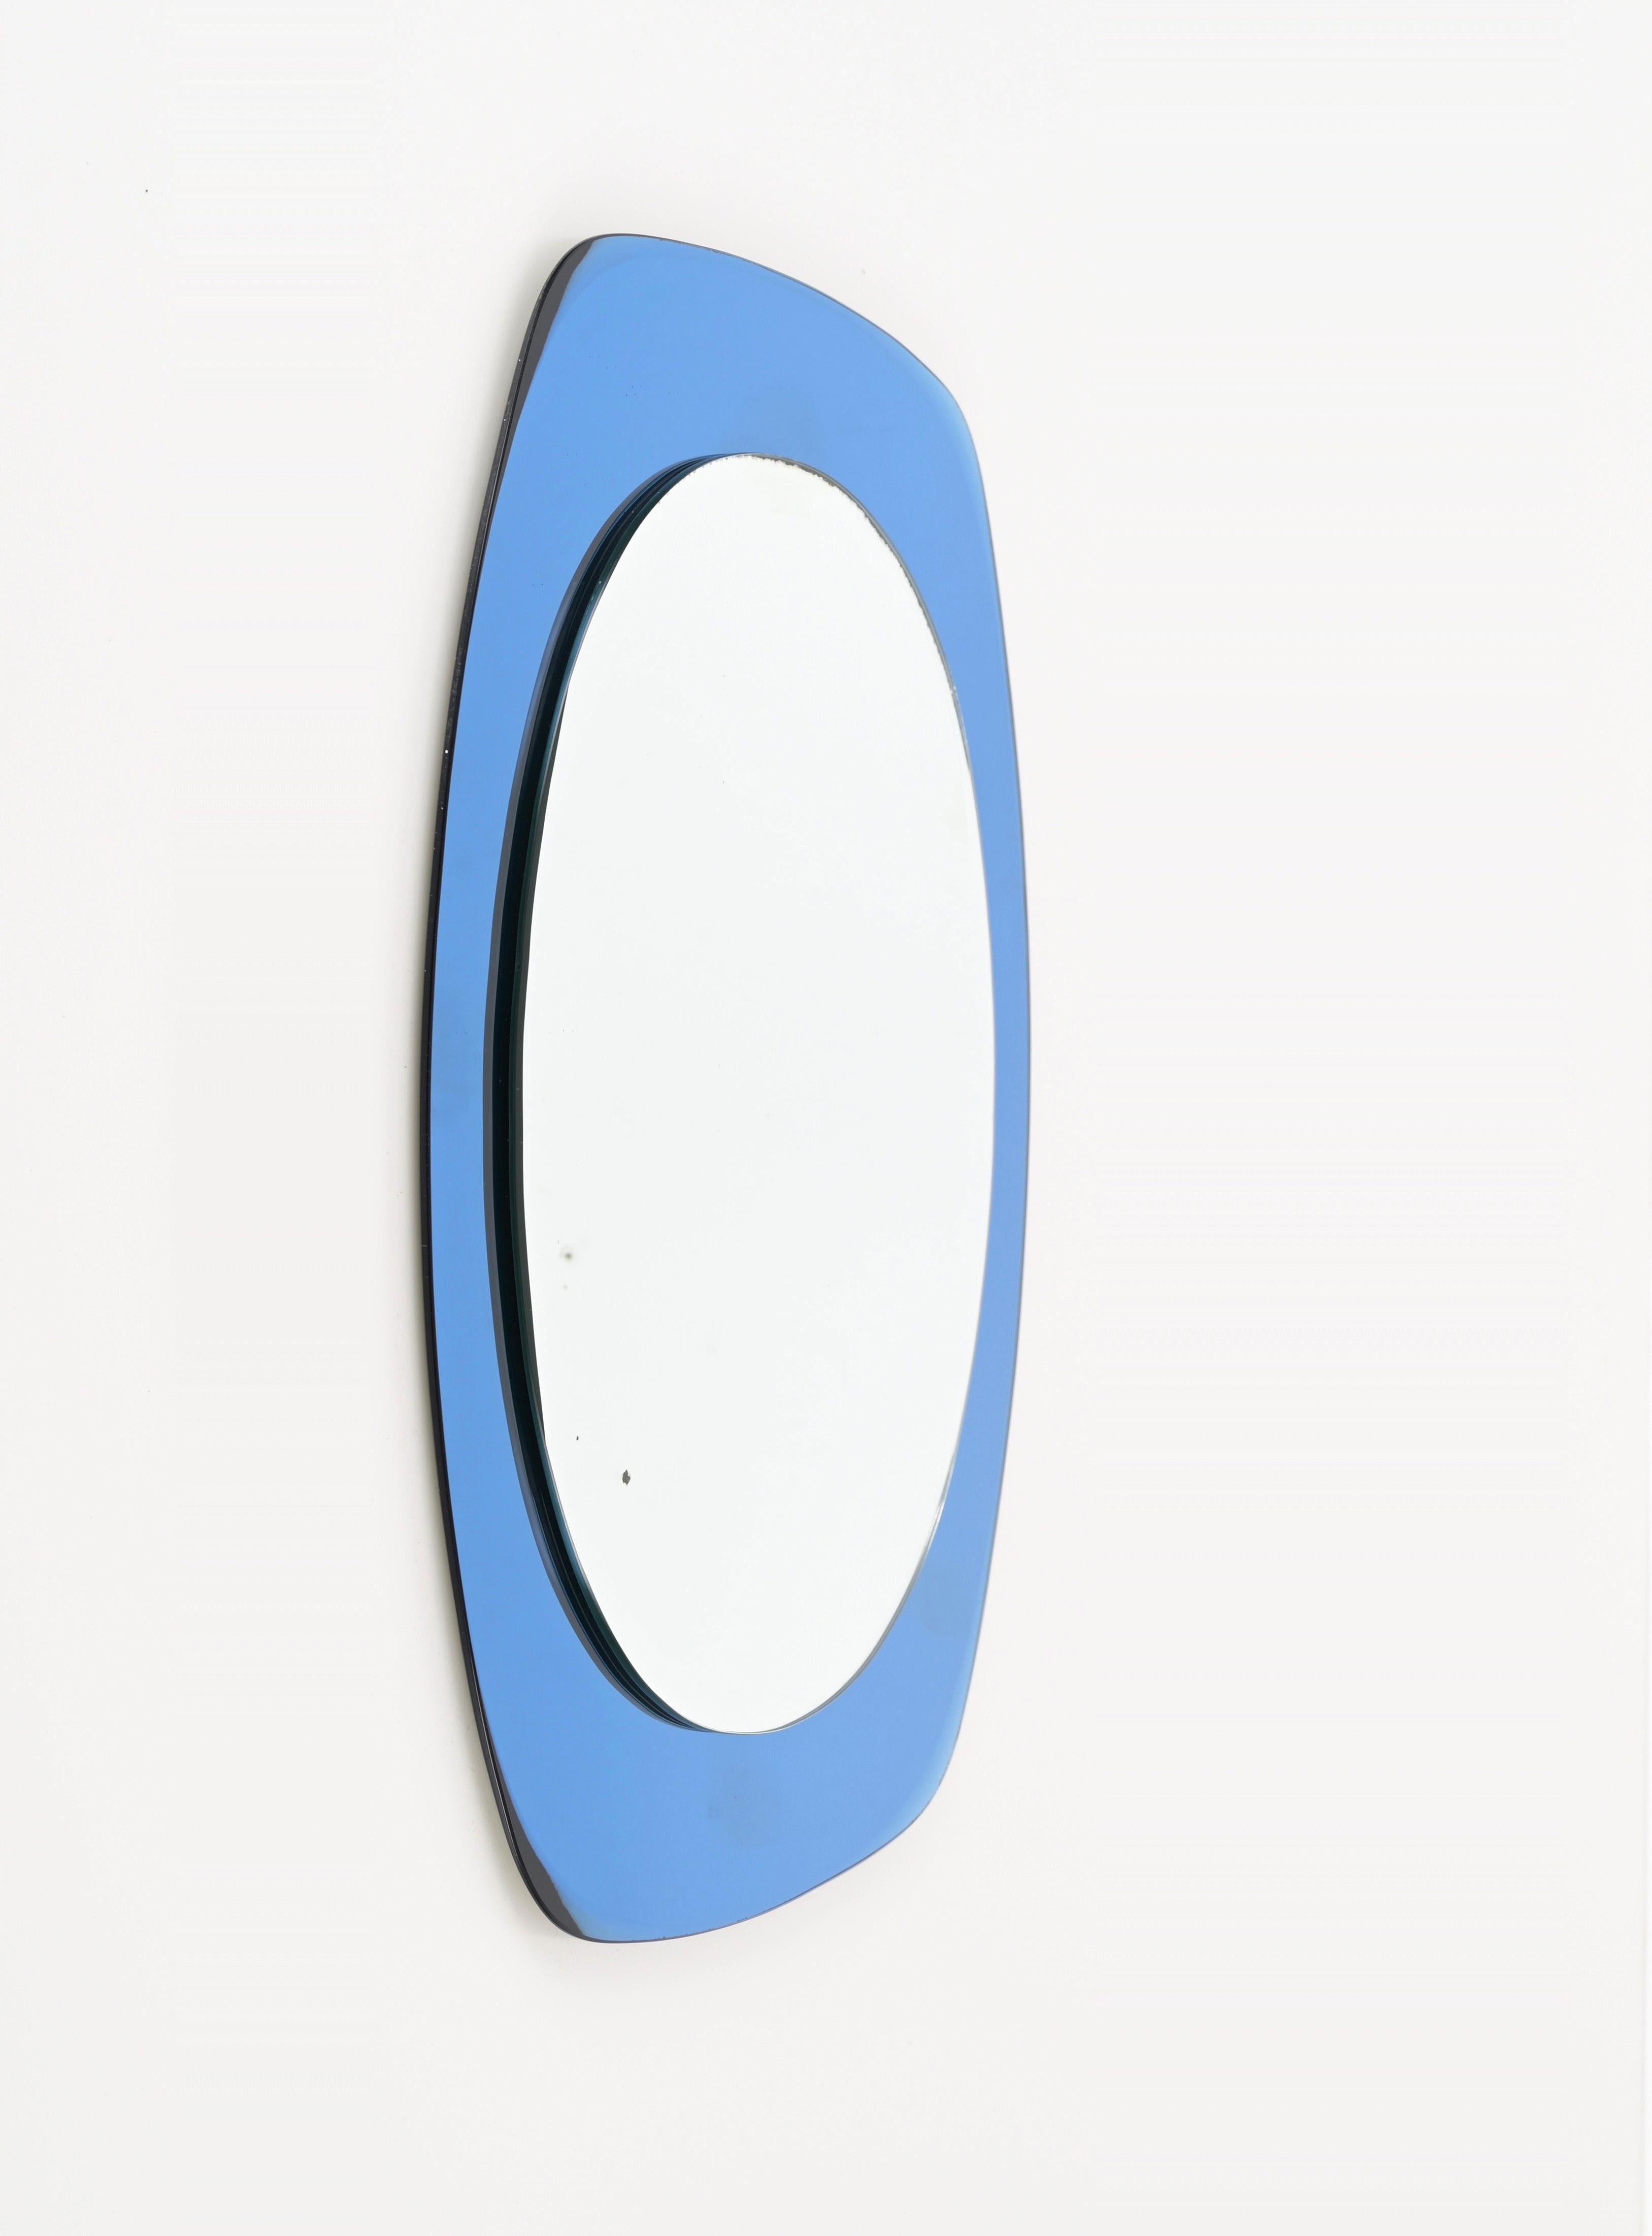 Magnifique miroir à deux niveaux du milieu du siècle dernier avec un superbe cadre en verre miroir bleu. Cette magnifique pièce a été produite en Italie dans les années 1960 par Crystal Art.

Le cadre biseauté en miroir bleu est incroyablement